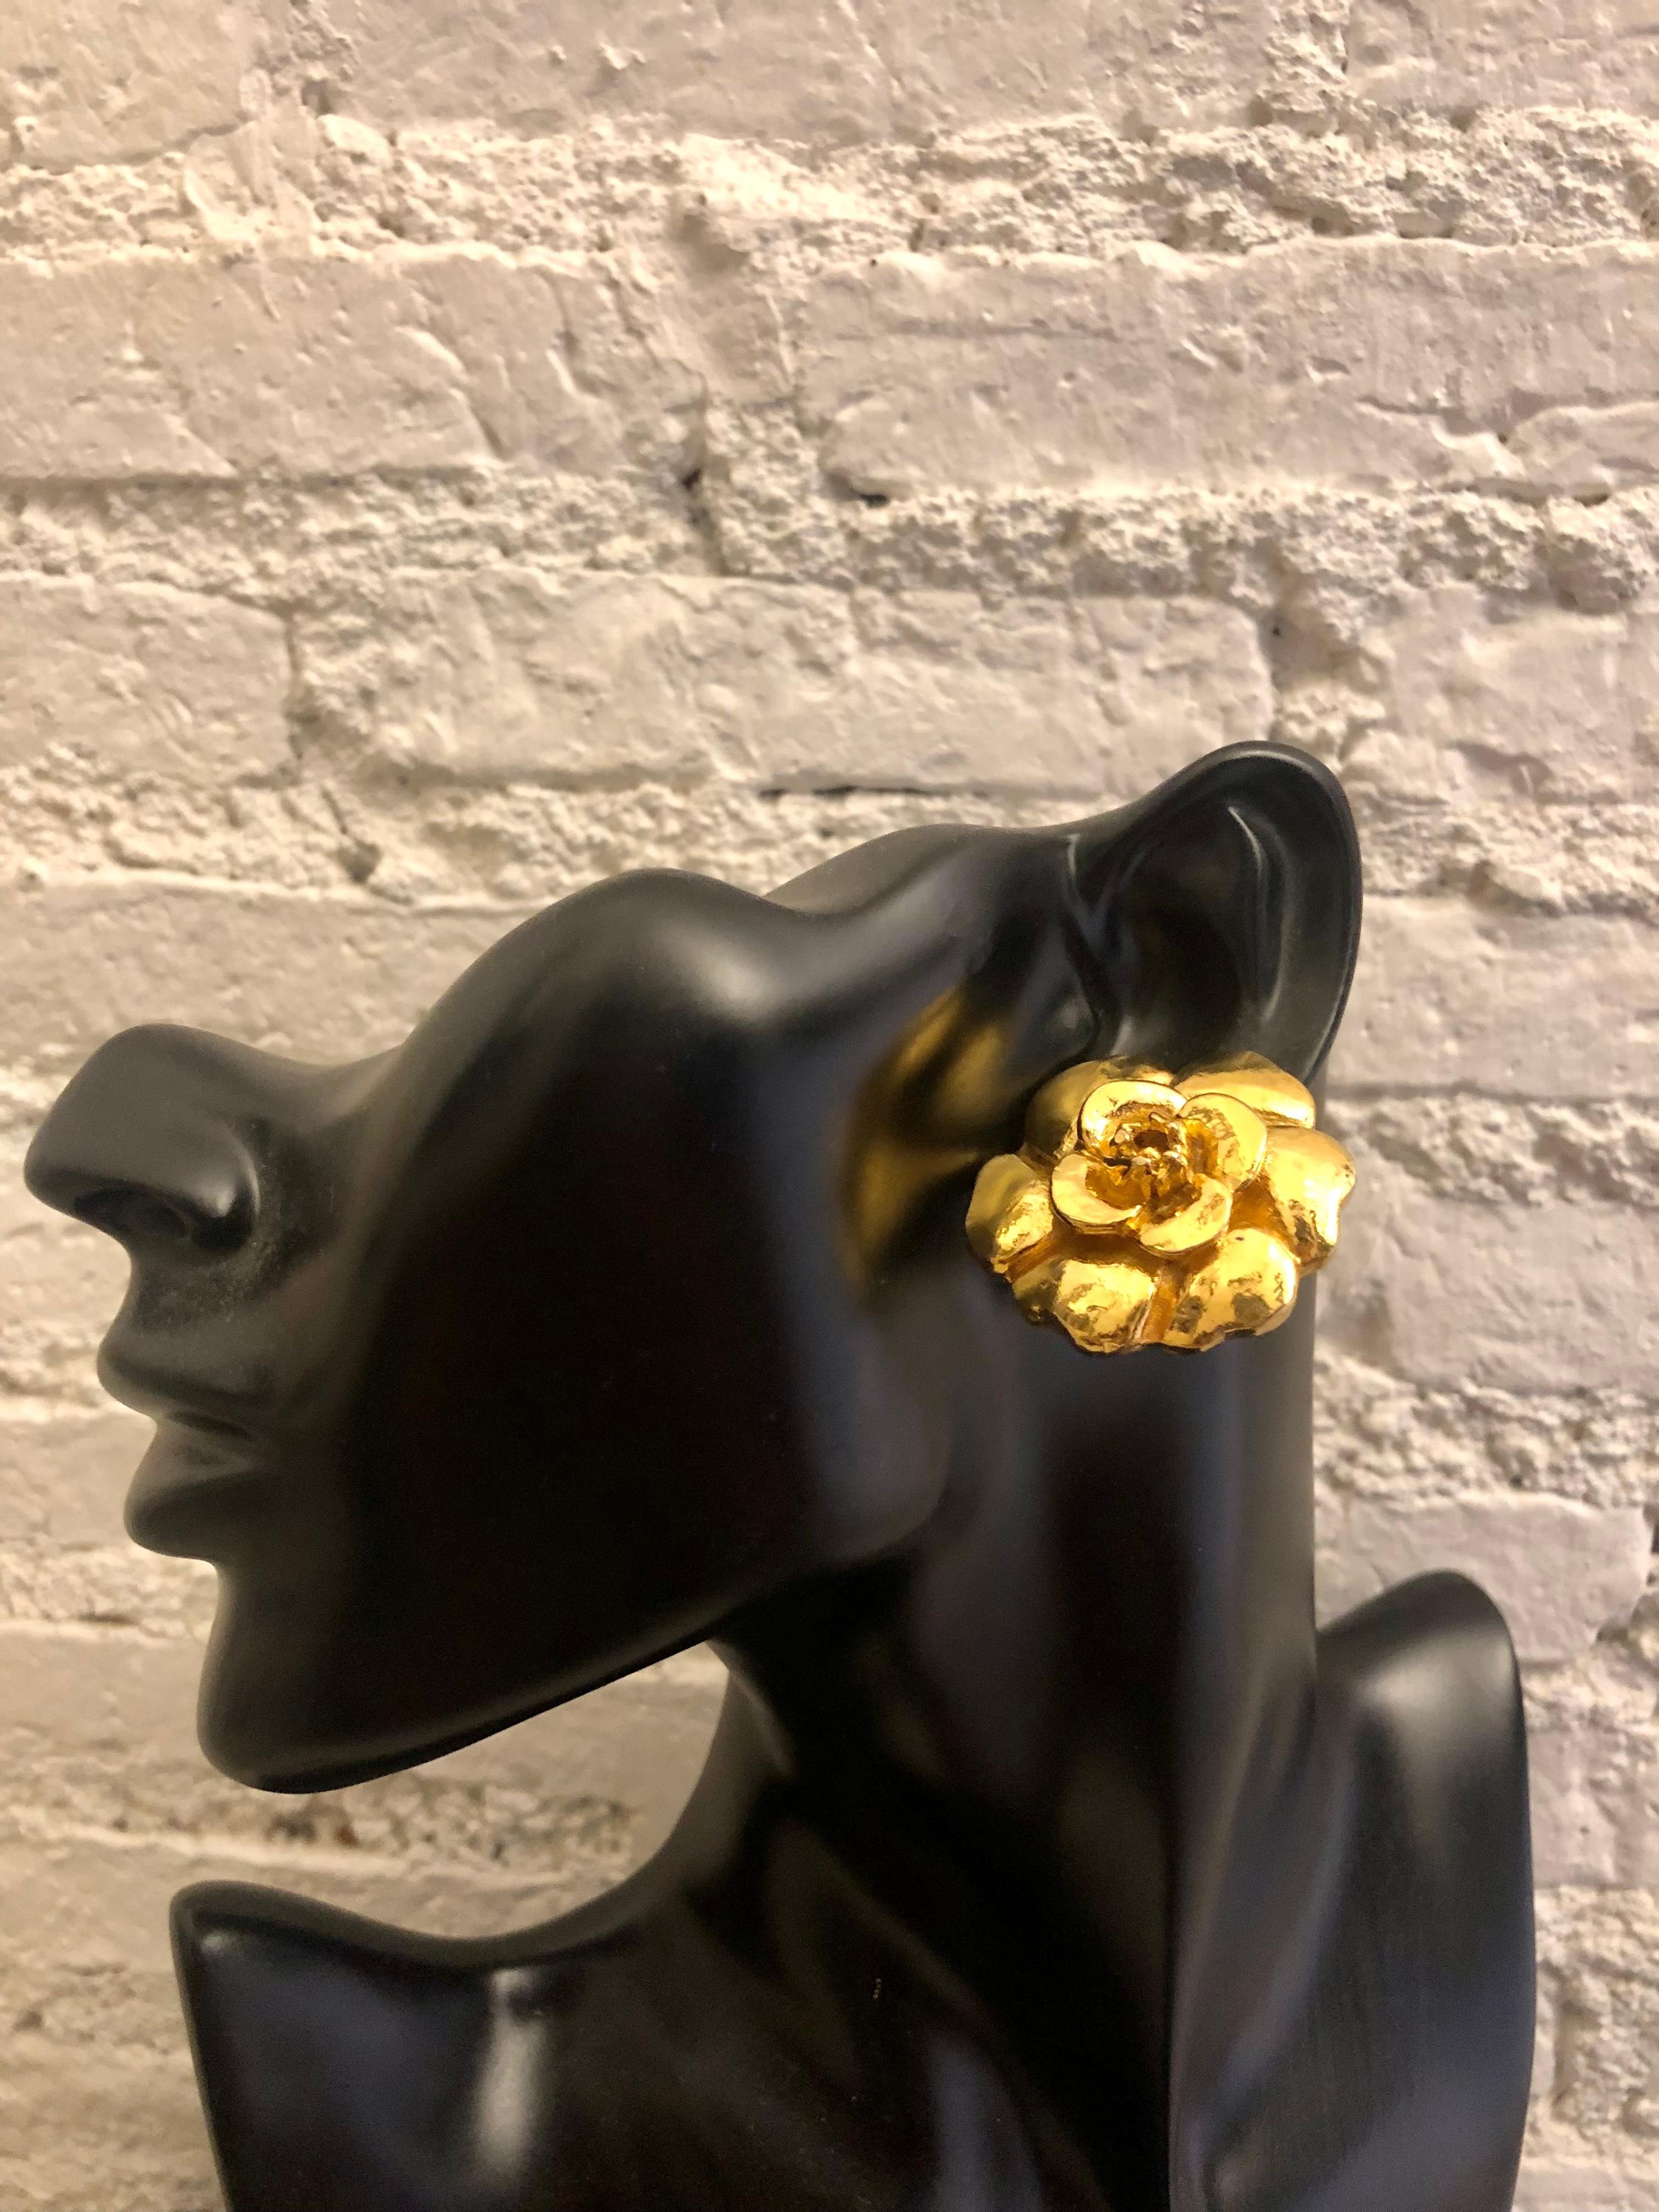 Diese Vintage-CHANEL-Ohrringe zum Anstecken sind aus vergoldetem Metall gefertigt und zeigen die ikonische Kamelienblüte von Chanel. Sie sind ein echtes Vintage Chanel aus den 1970er Jahren. Gestempelt CHANEL made in France. Der Durchmesser beträgt